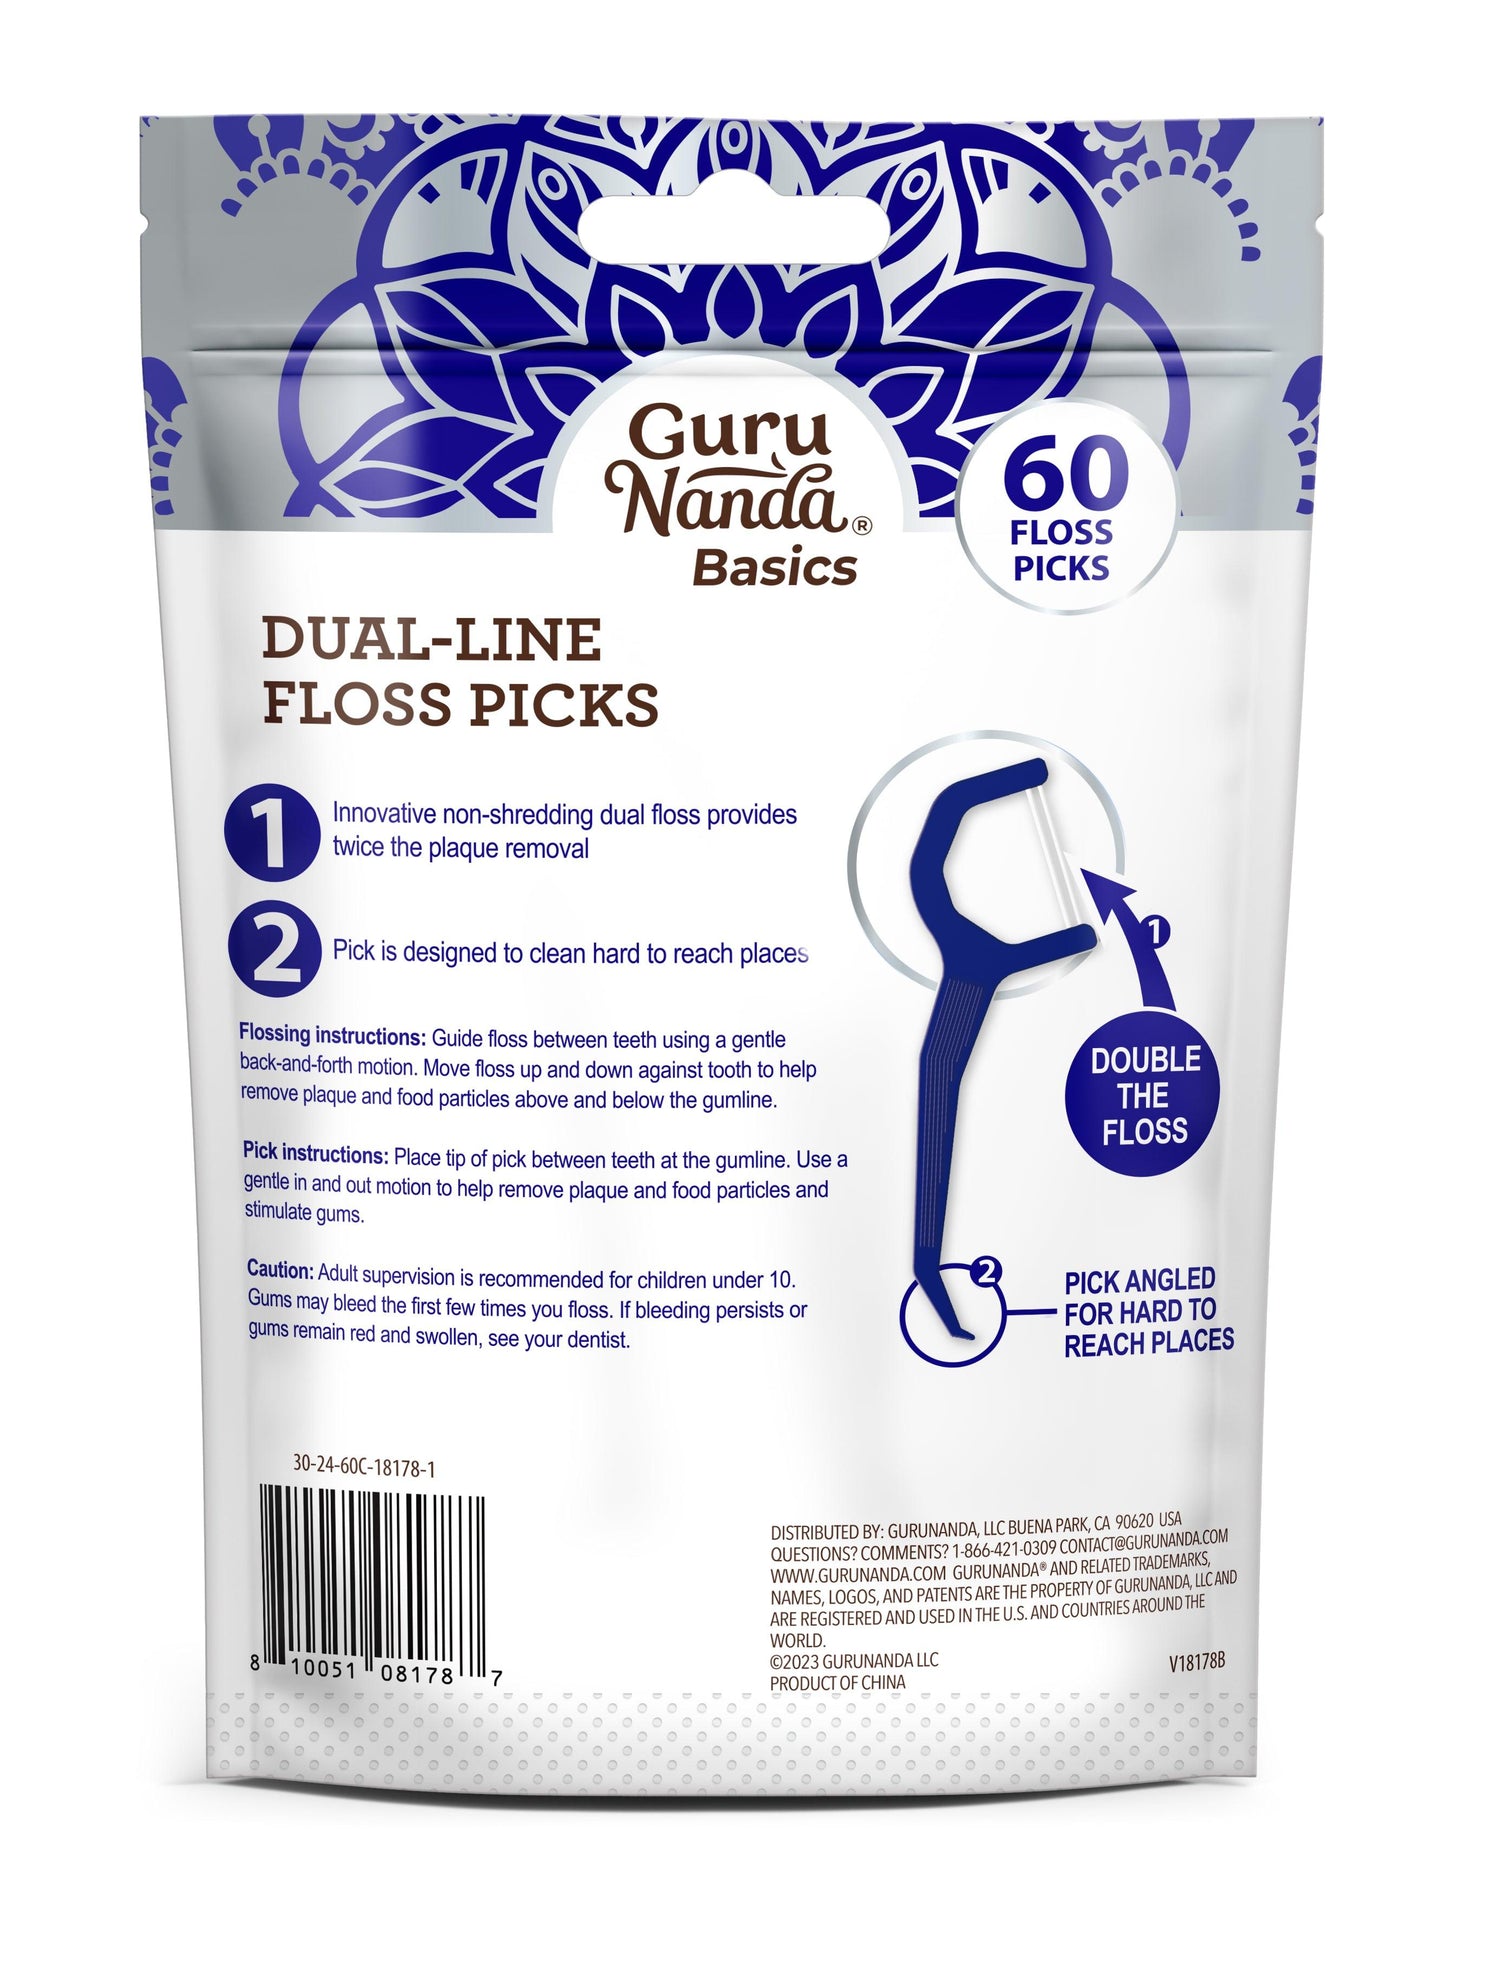 Dual-Line Floss Picks - 60 Count - GuruNanda